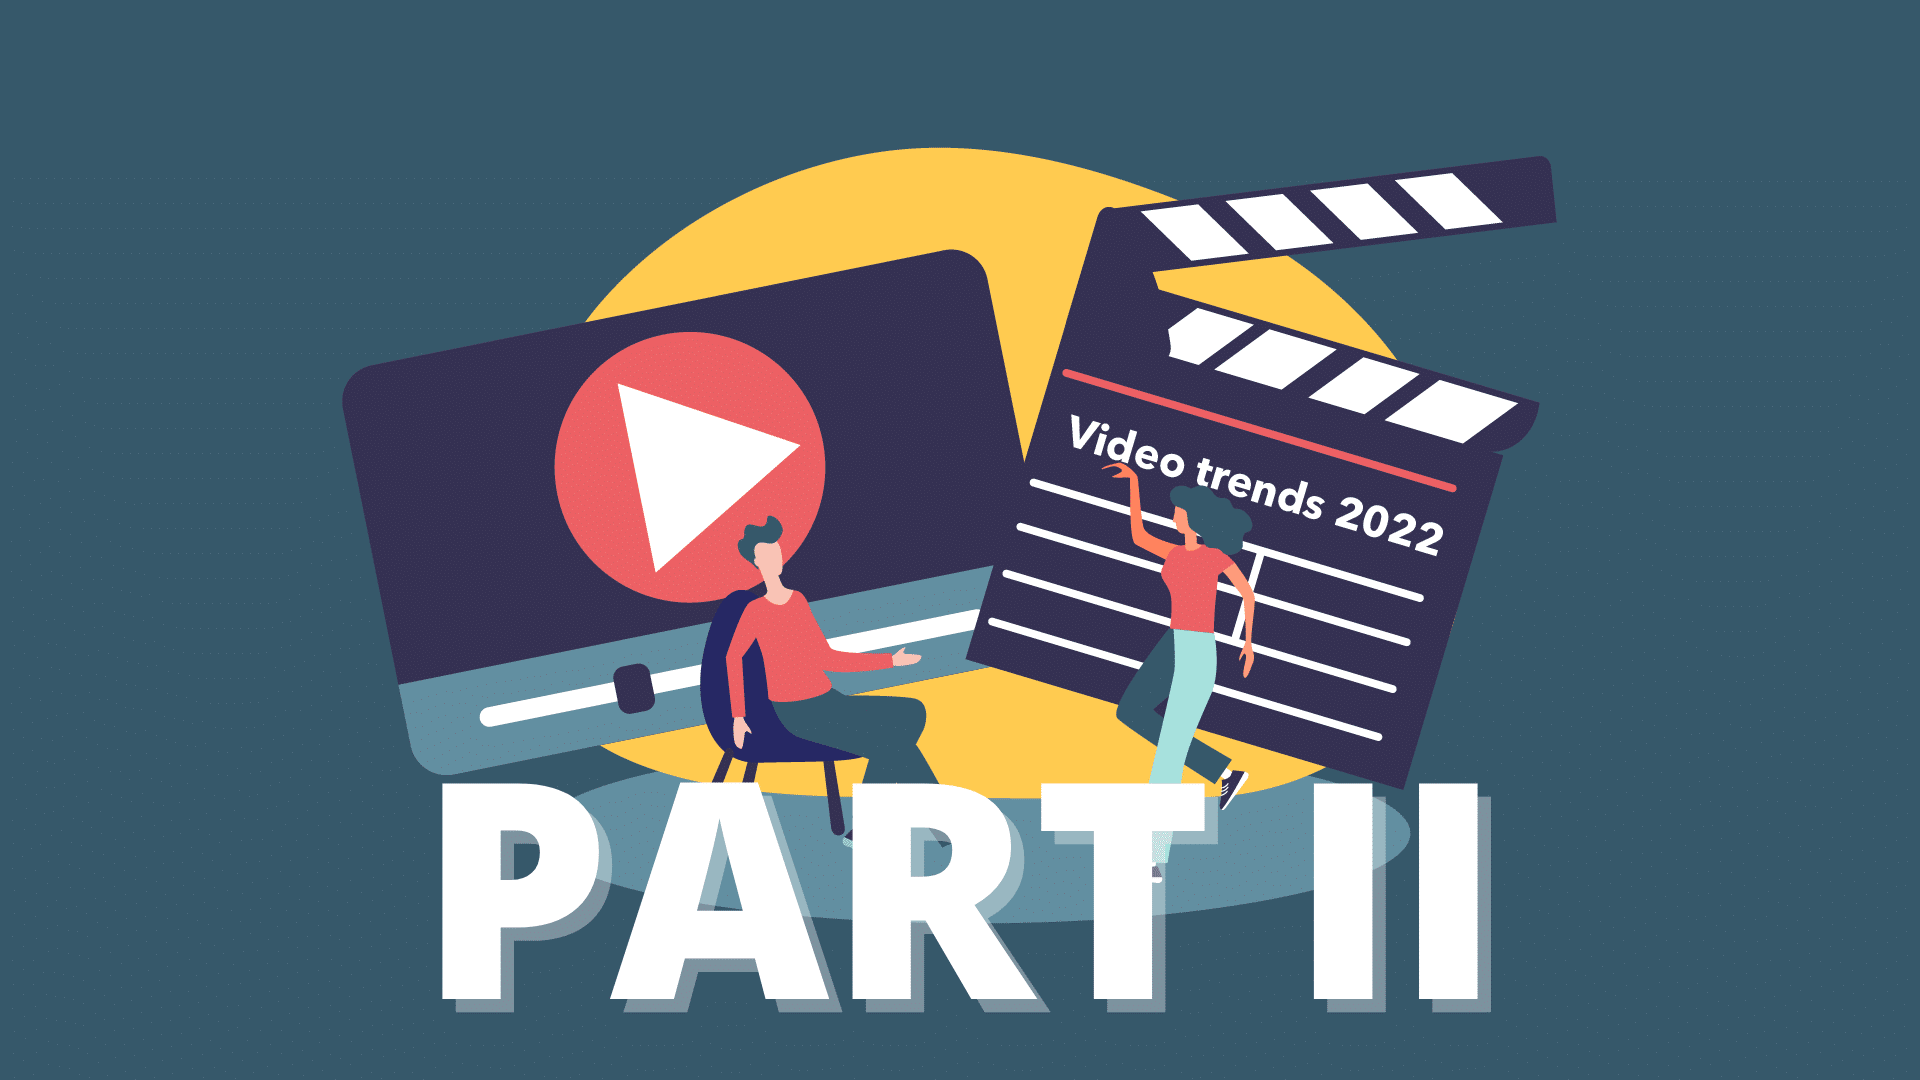 Video trends of 2022 part II